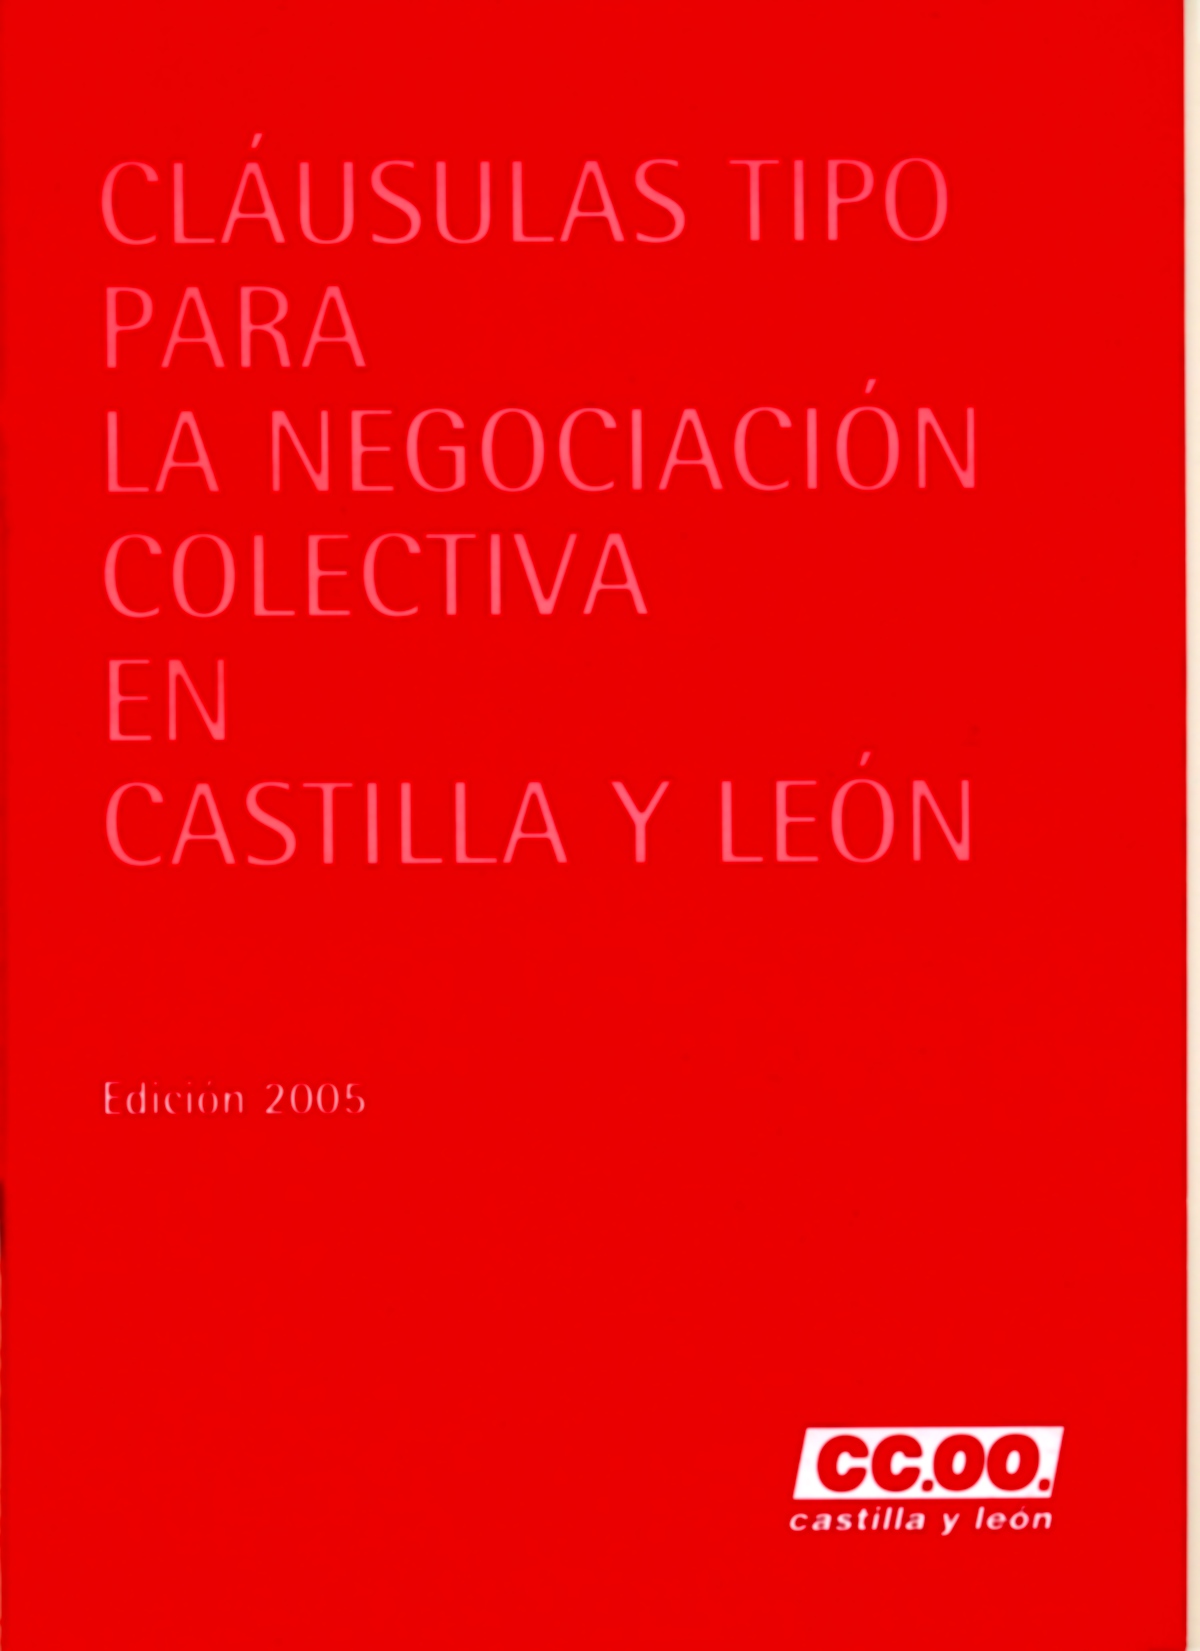 Este documento pretende ser un instrumento de apoyo a la Negociación Colectiva en Castilla y León, y nunca una obstrucción o bloqueo a las caracteristicas particulares de cada sector o empresa. La Uni